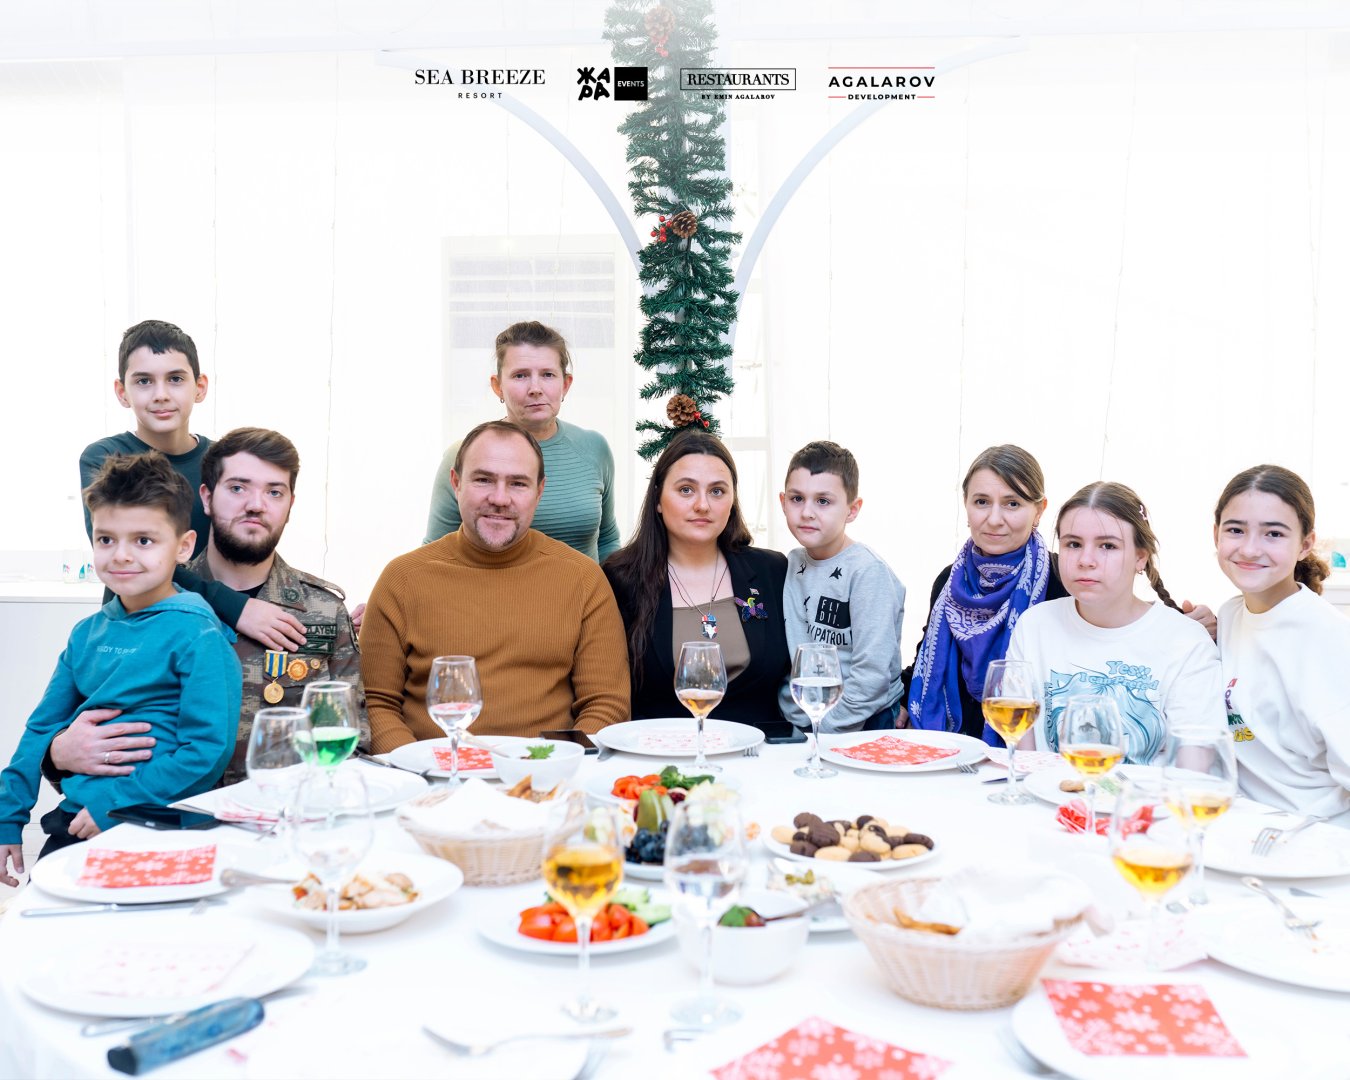 Эмин Агаларов организовал благотворительную елку в Sea Breeze  (ФОТО)